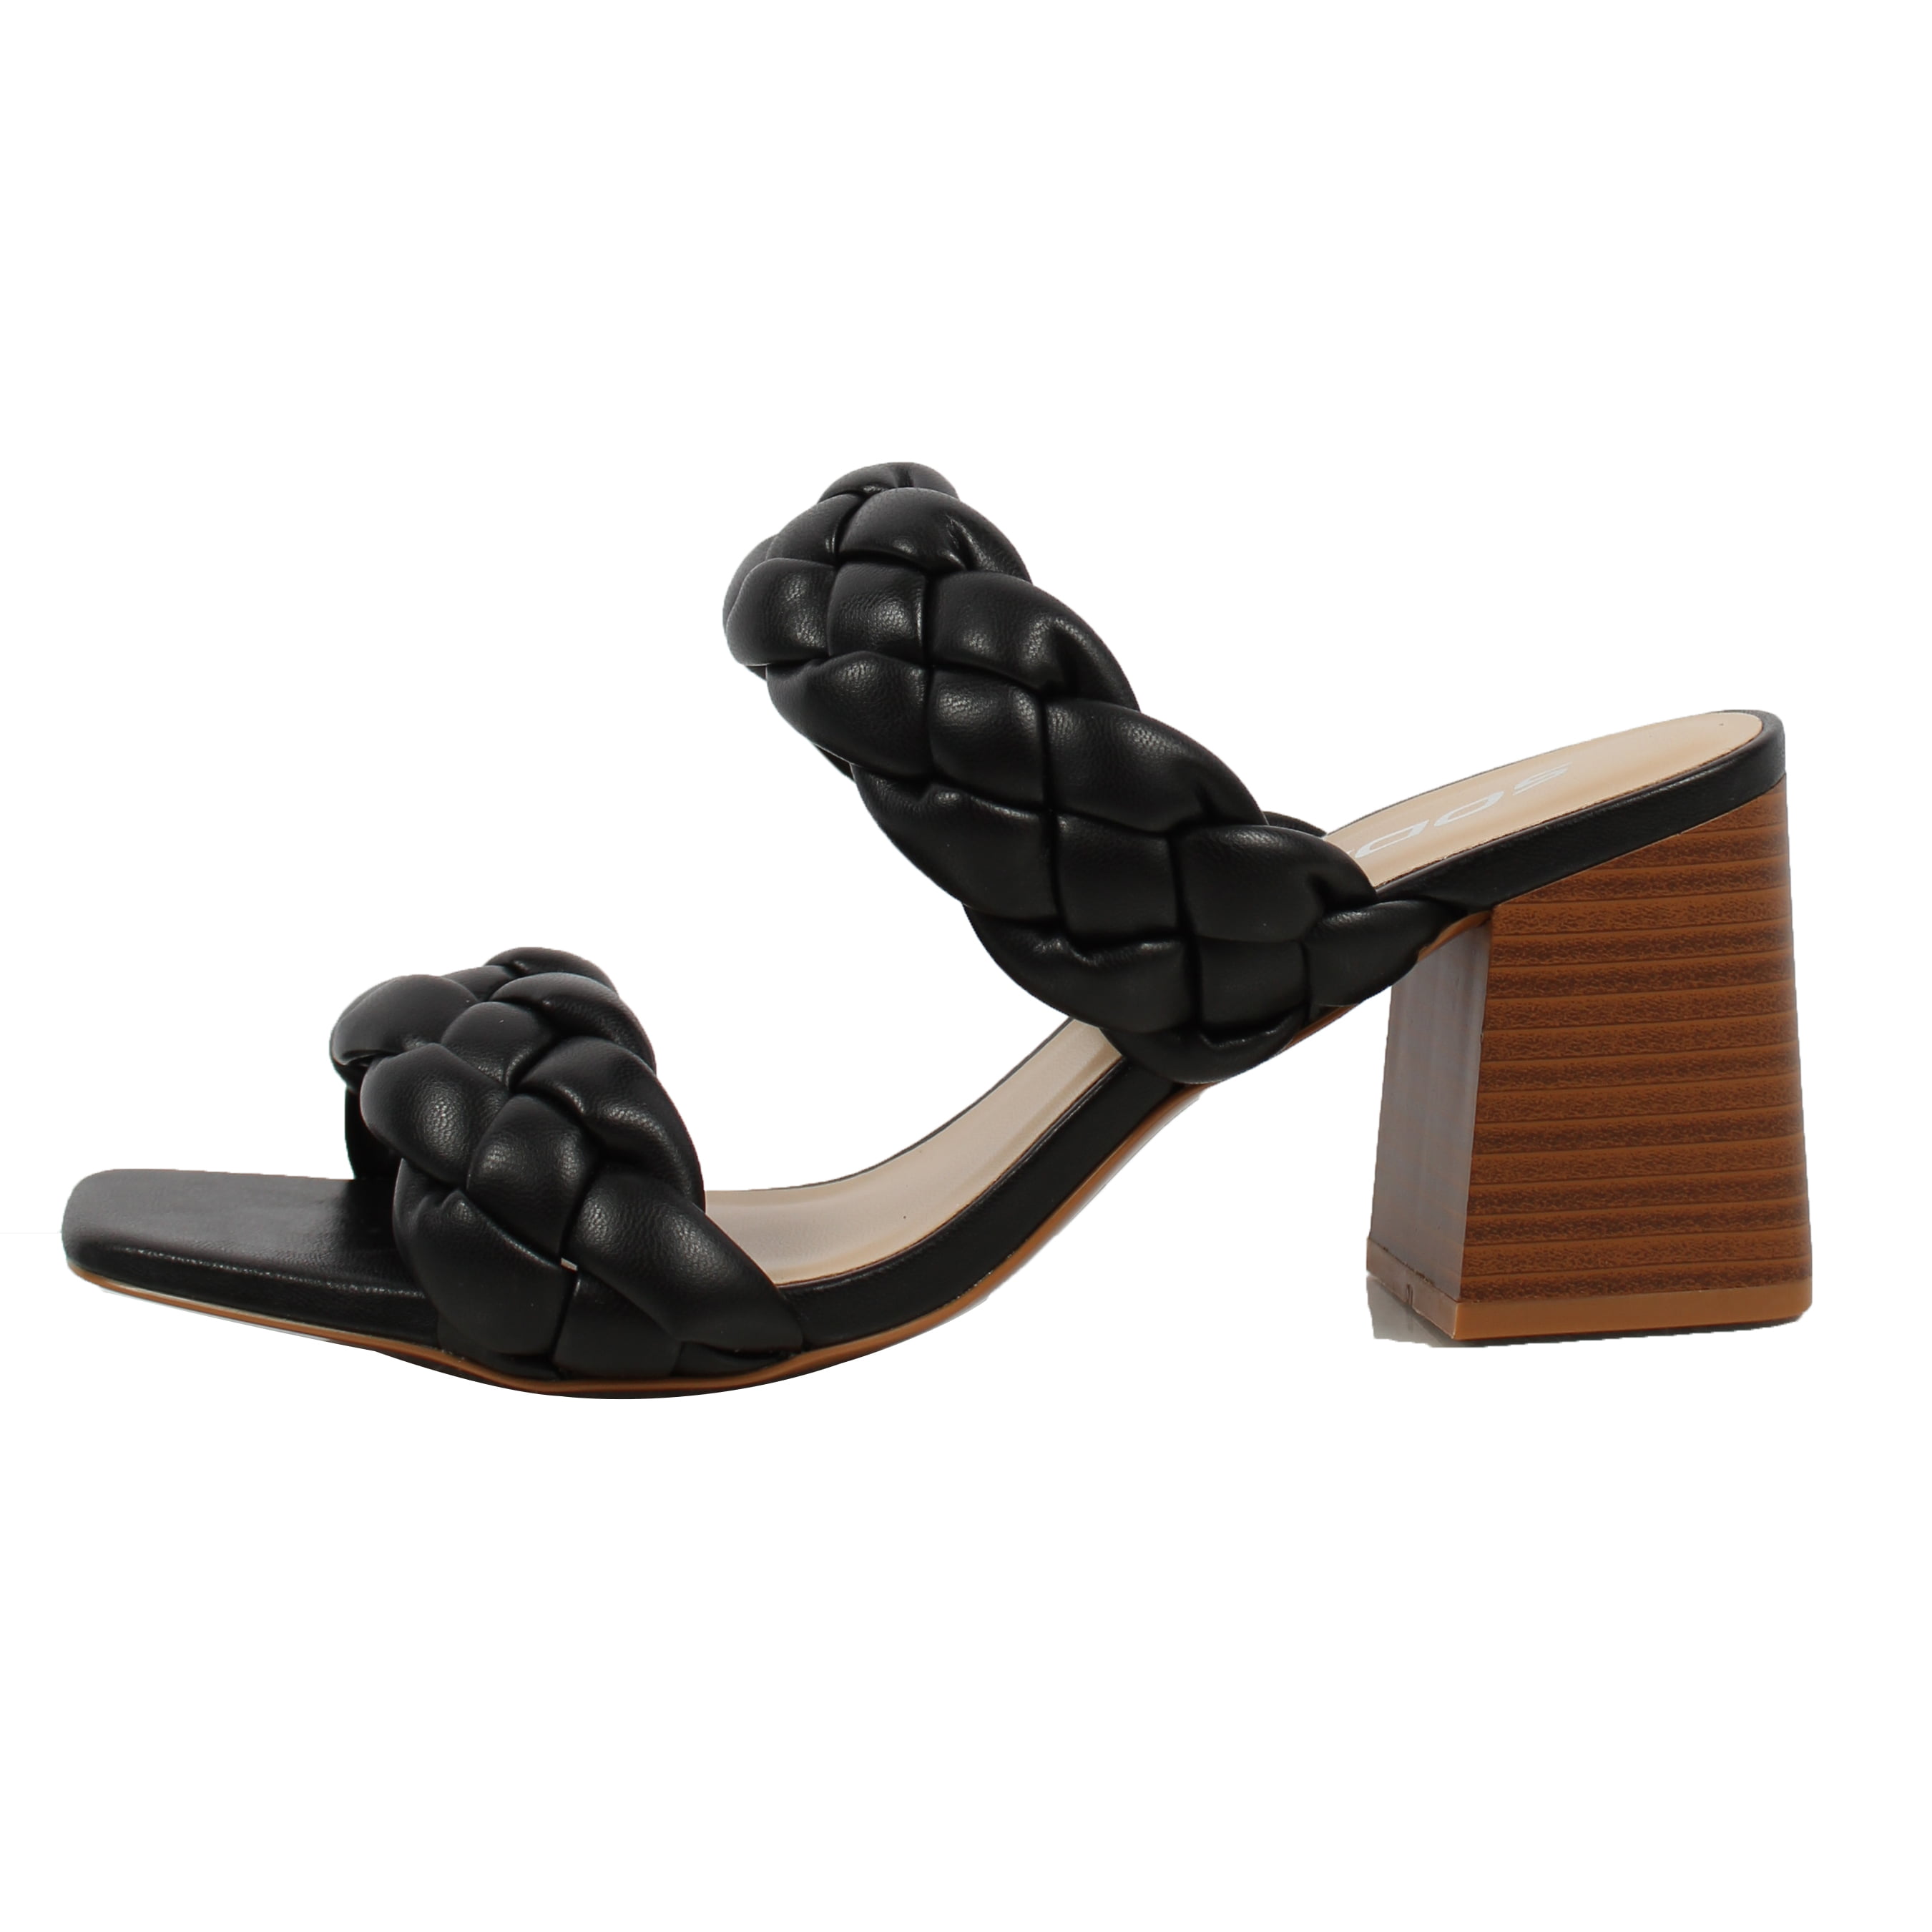 Perphy Women's Open Toe Dual Straps Block Heels Slide Sandals Black 6